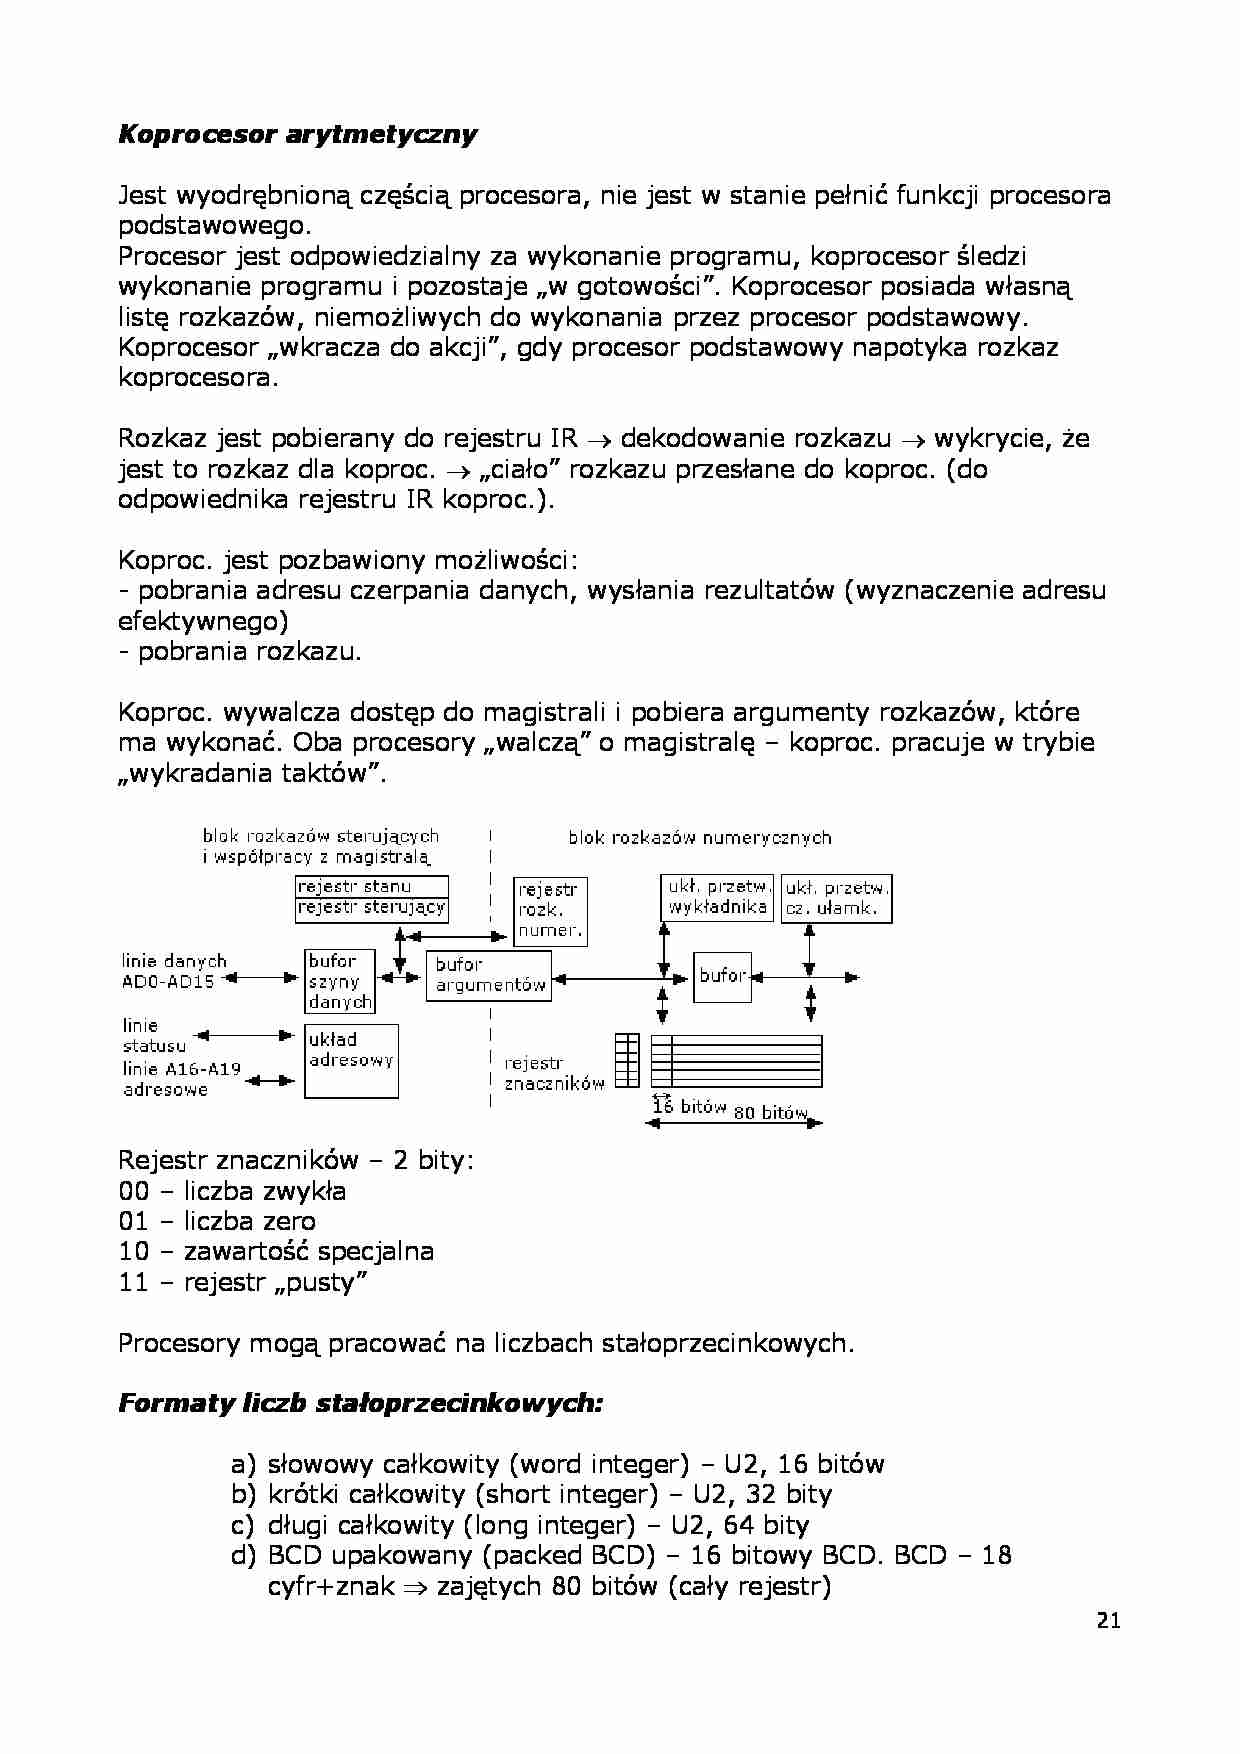 koprocesor arytmetyczny - omówienie - strona 1